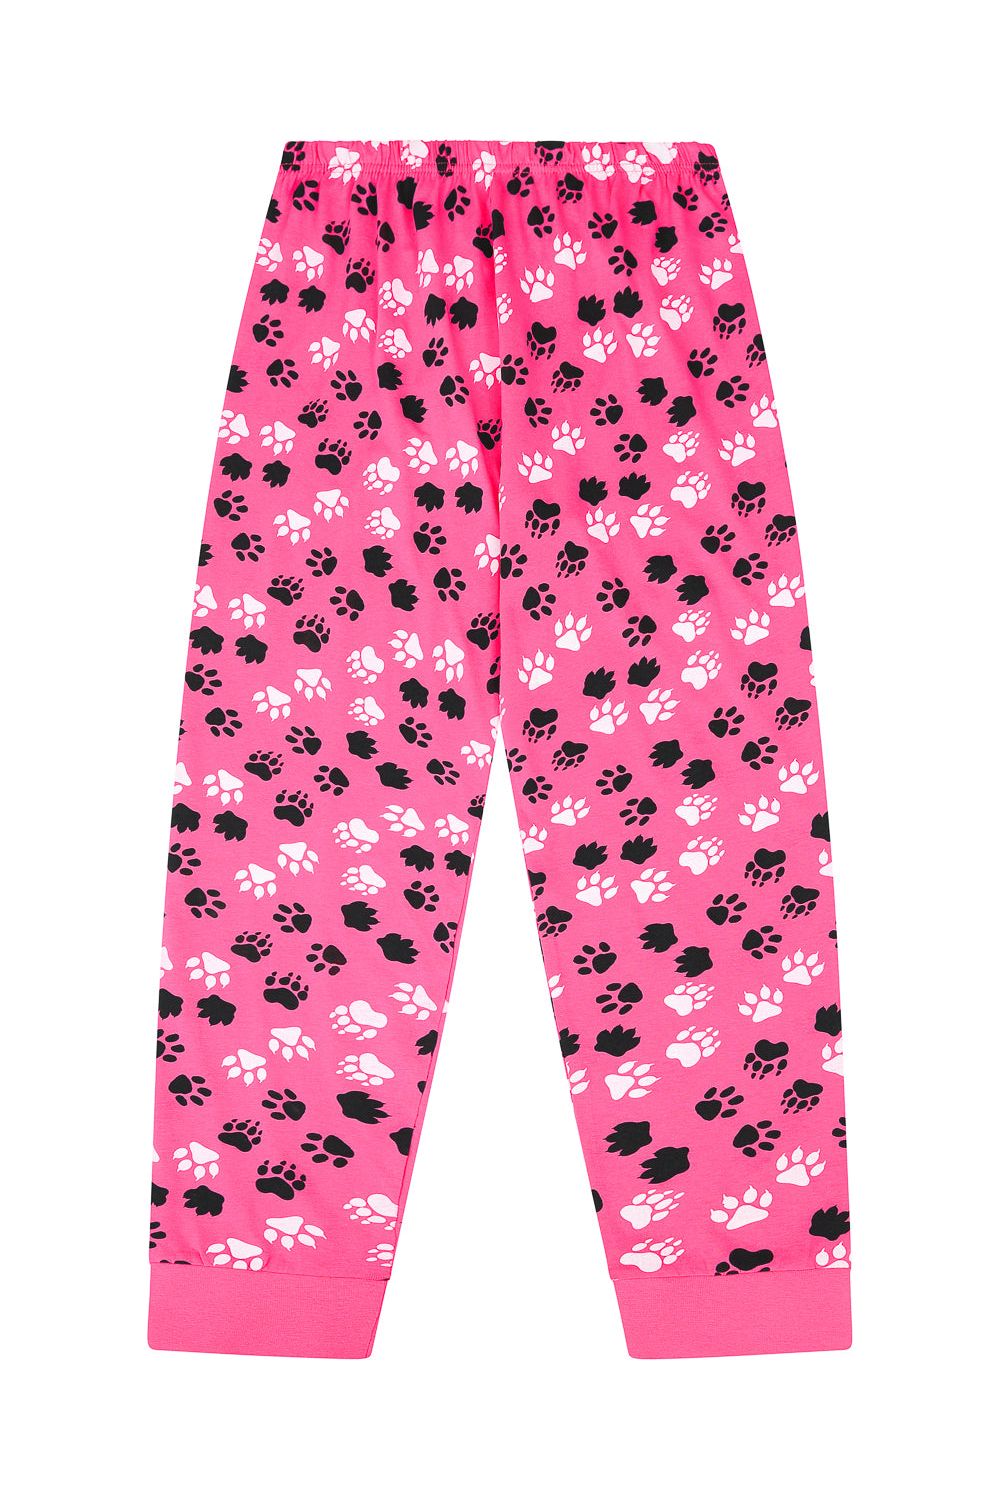 Cute Girl's Love Animal Paw Print Pyjamas - Pyjamas.com